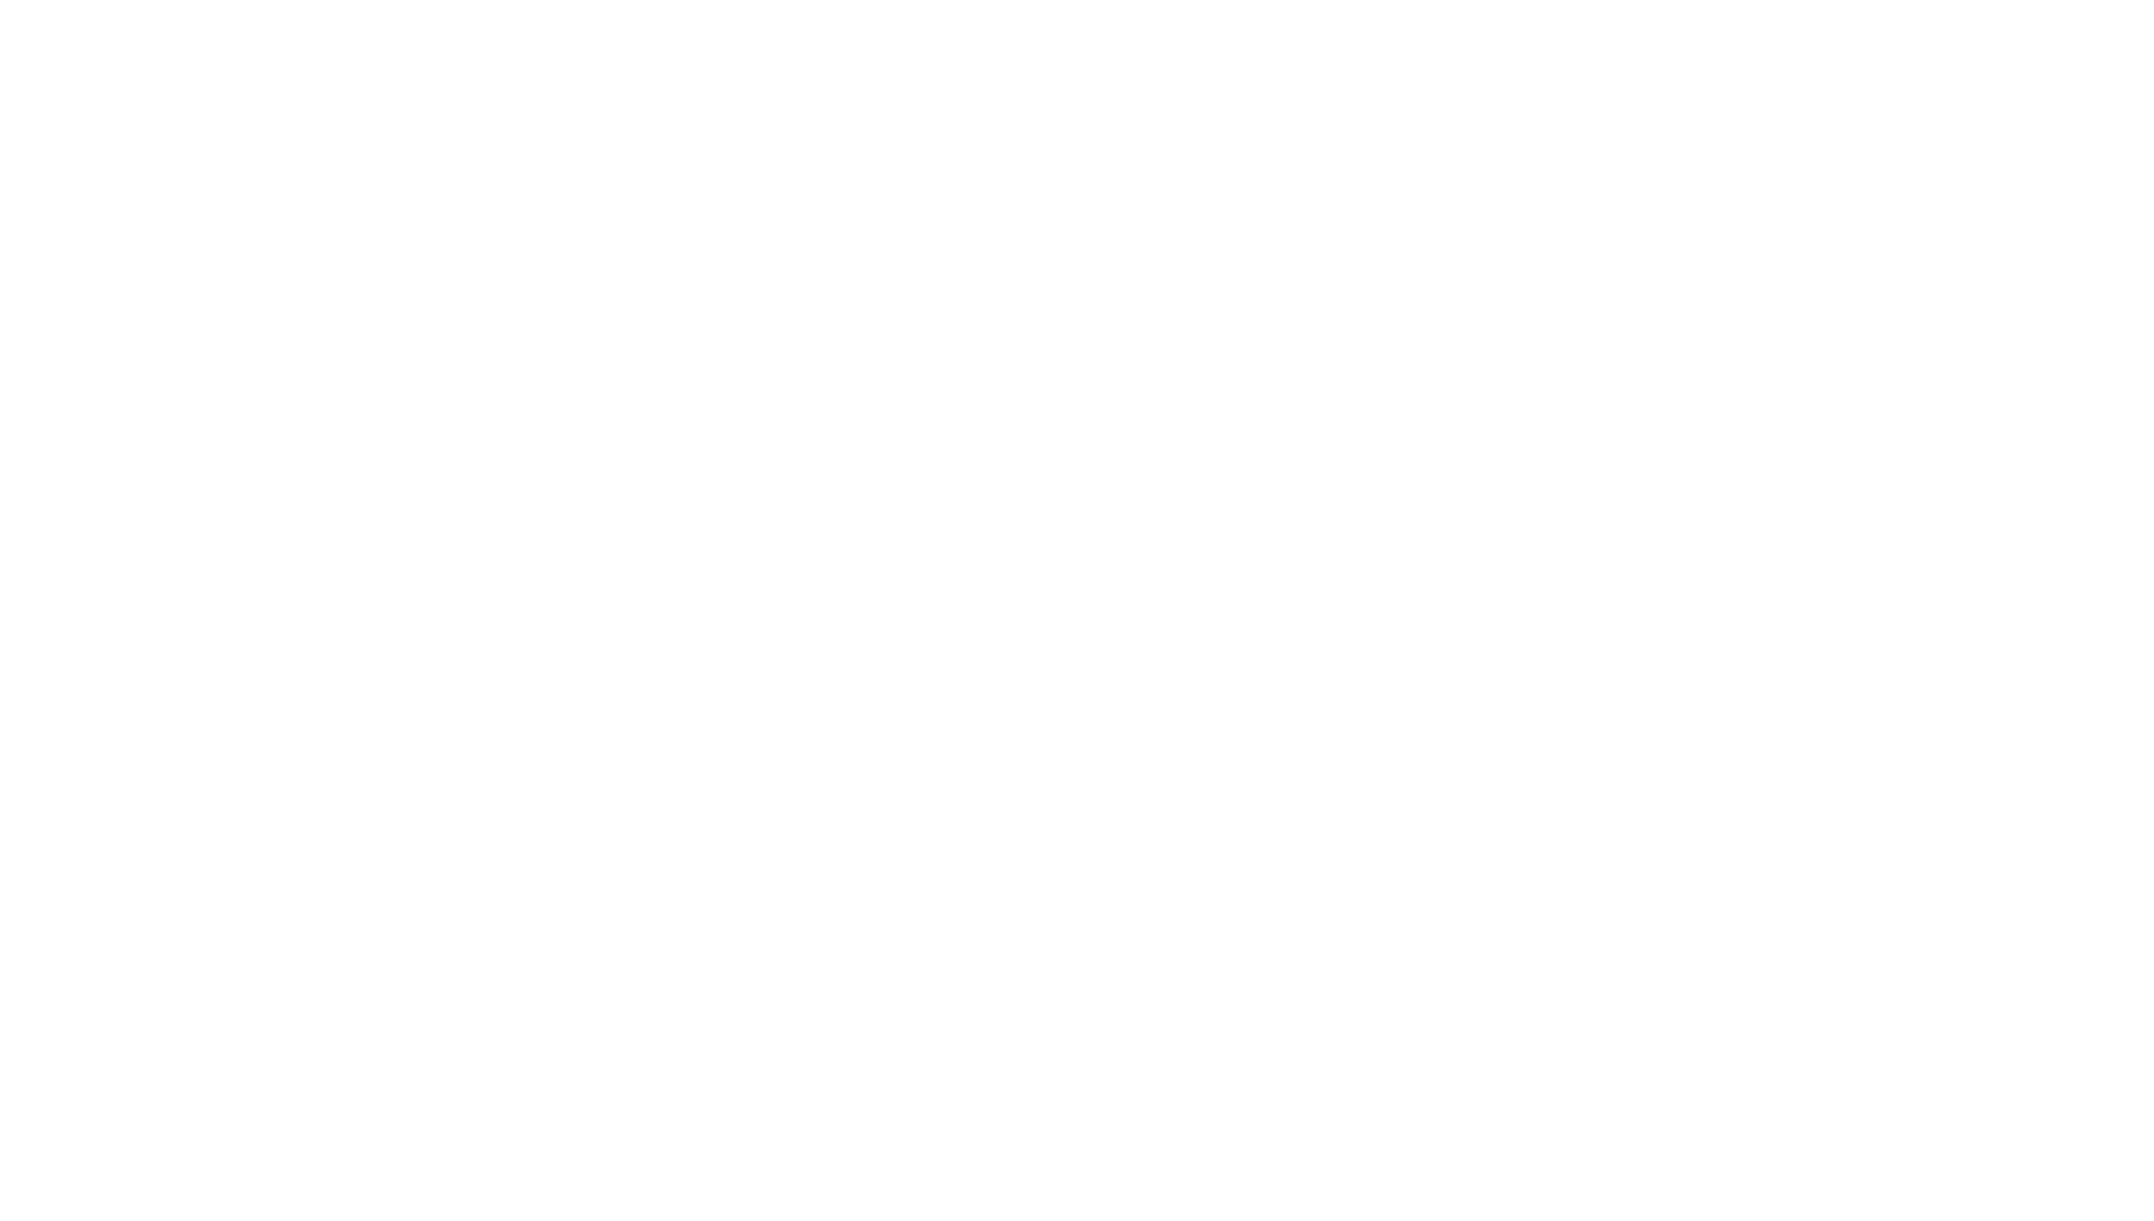 Woman Walks Ahead logo